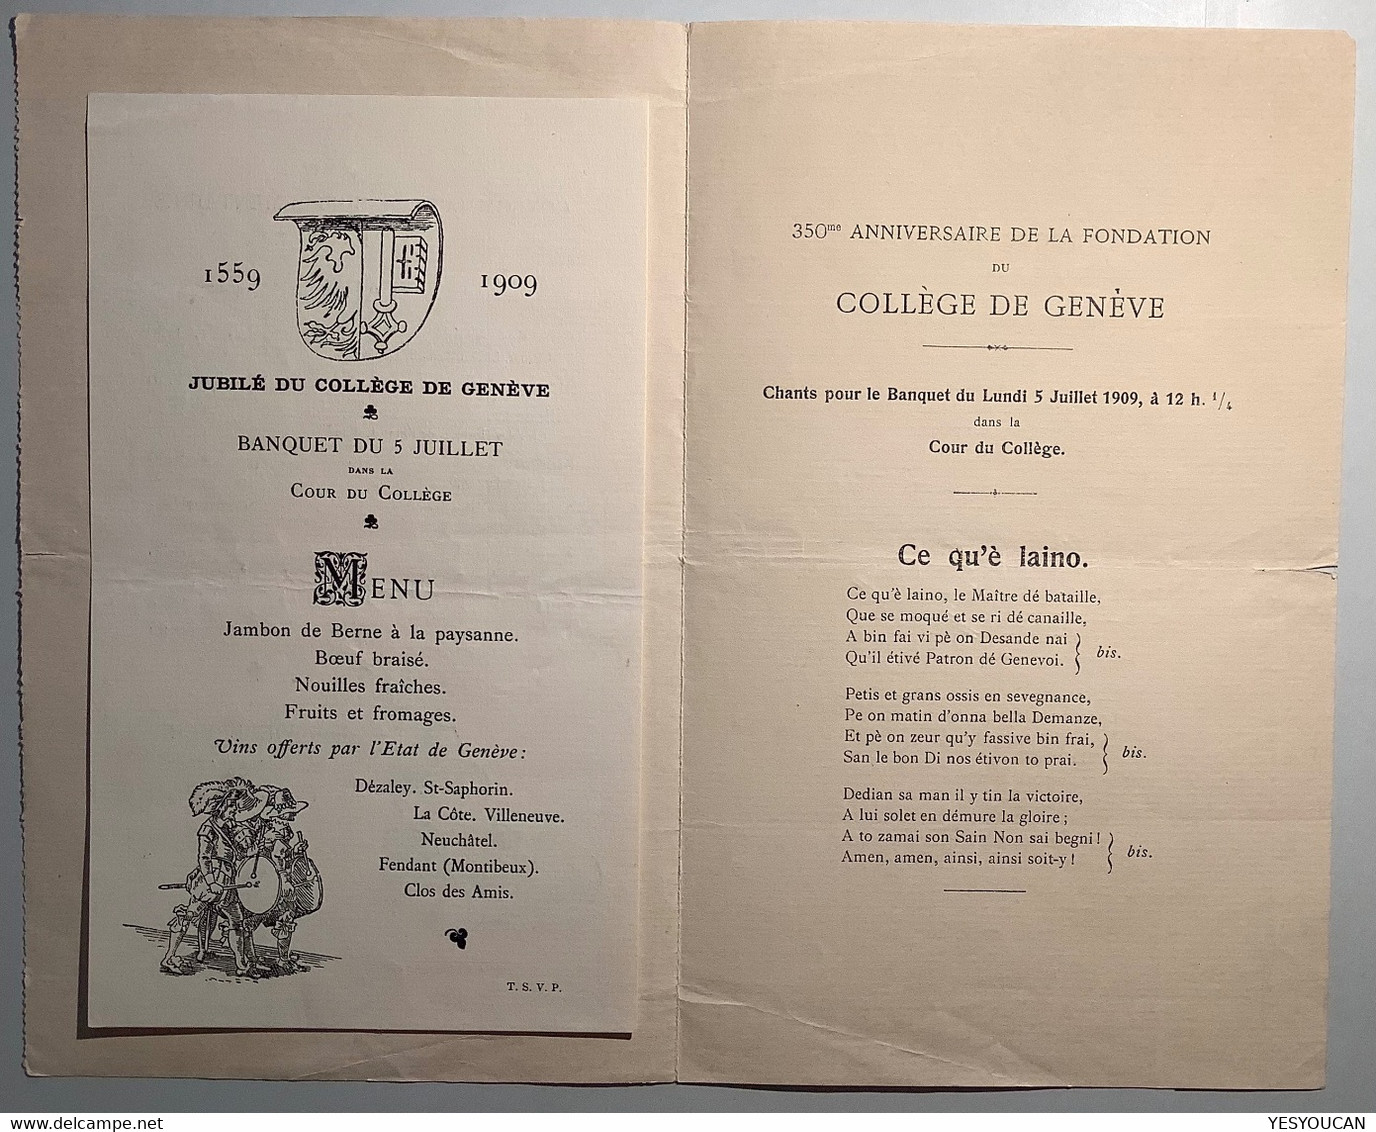 Jubilé Du Collége De Genève 1559-1909 Carte Du Menu Du Banquet Jean Wiederkehr Restaurateur (Schweiz Suisse école - Diplome Und Schulzeugnisse